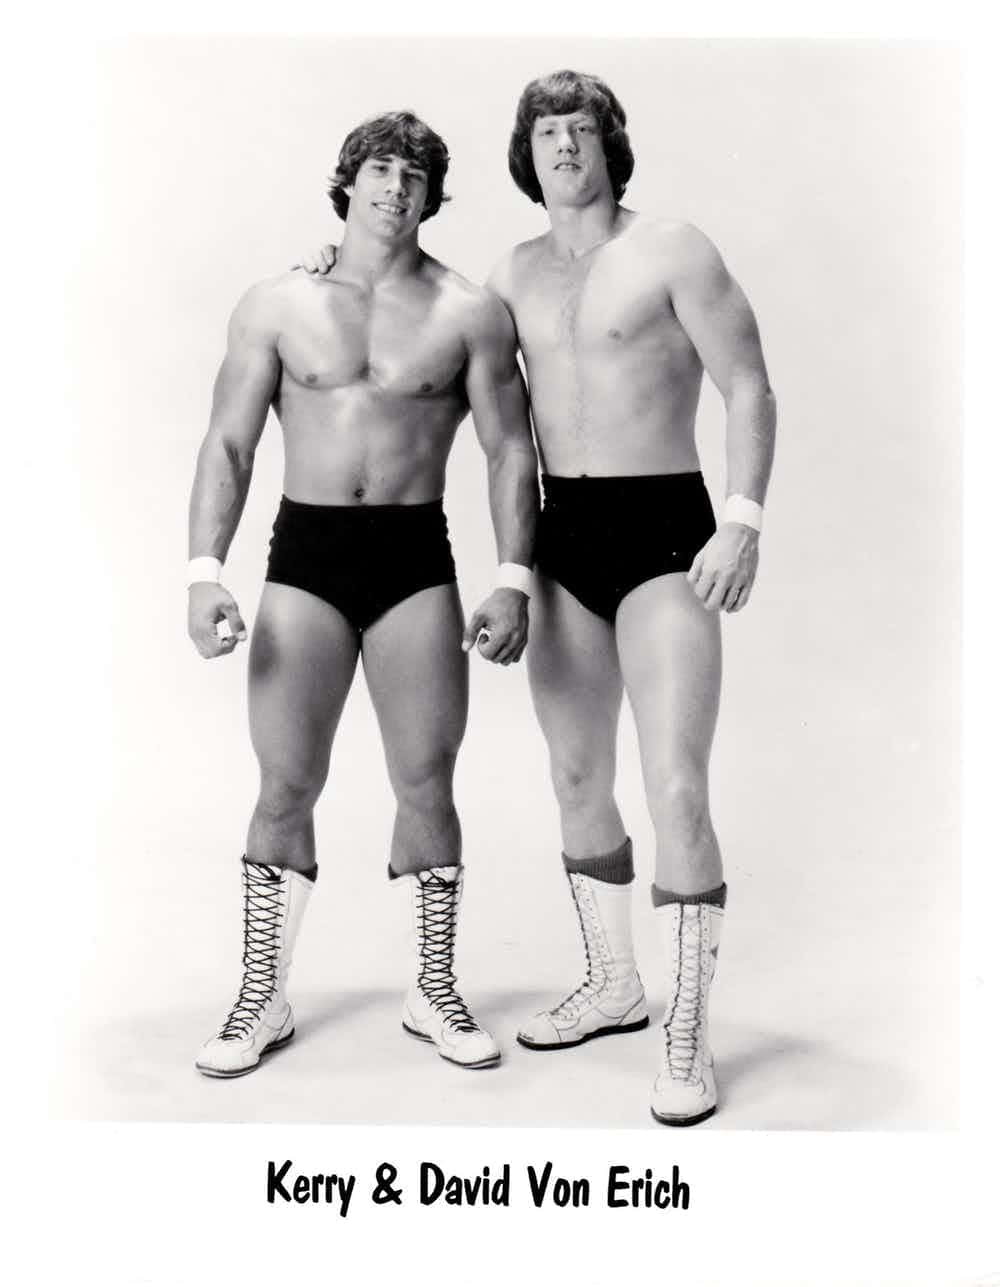 Legendary Wrestlers David and Kerry Von Erich in a Portrait Wallpaper